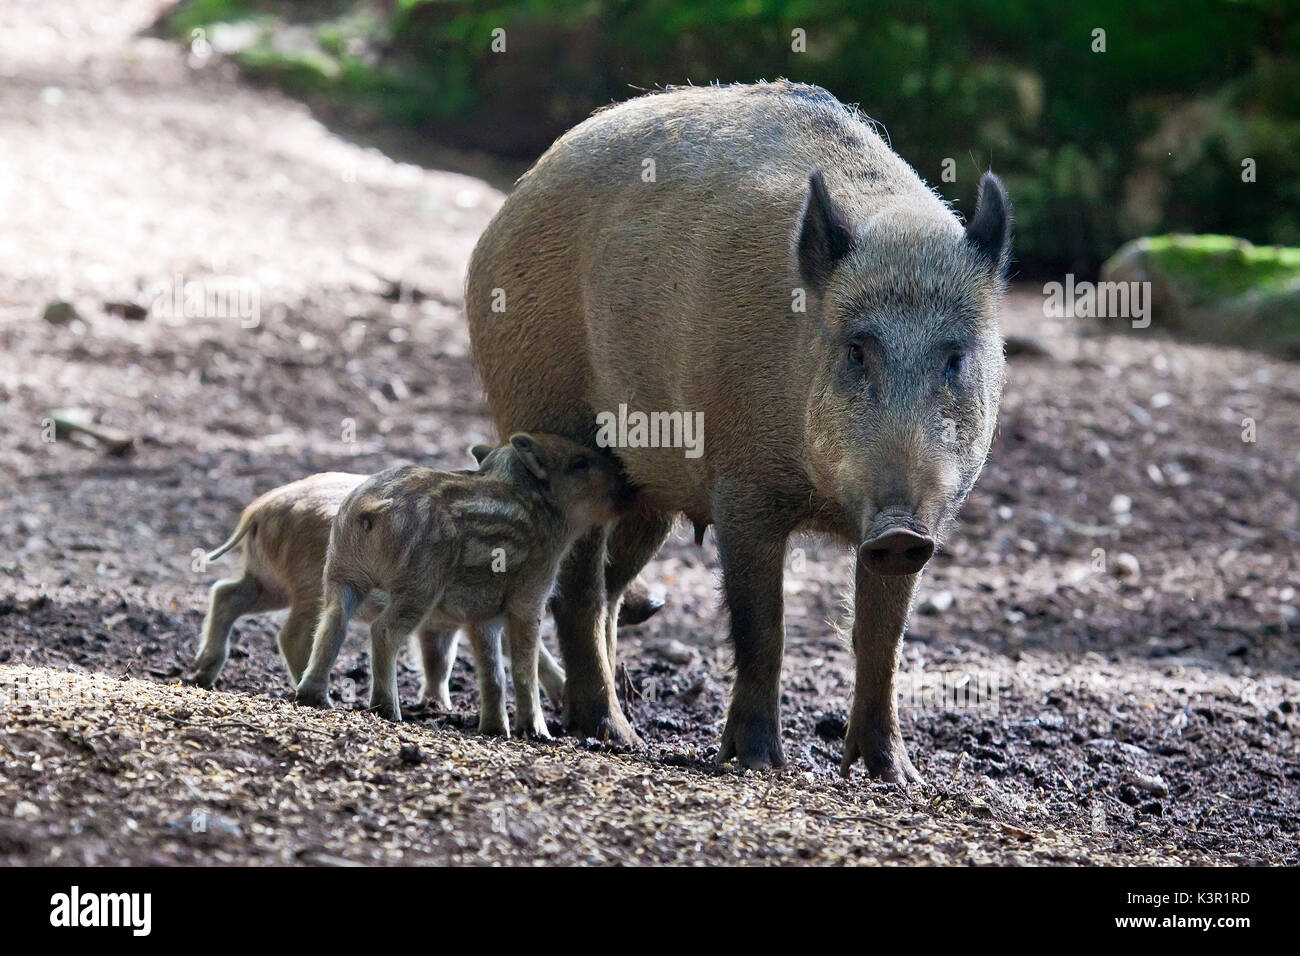 Le sanglier (Sus scrofa), à partir de la famille bof les porcs, vit dans les bois des Alpes, même si elle peut s'adapter à tous les types d'habitat. Dans cette photo la mère est l'alimentation de la cub dans les bois de Baviera ( Bayerischewald) Allemagne Europe Banque D'Images